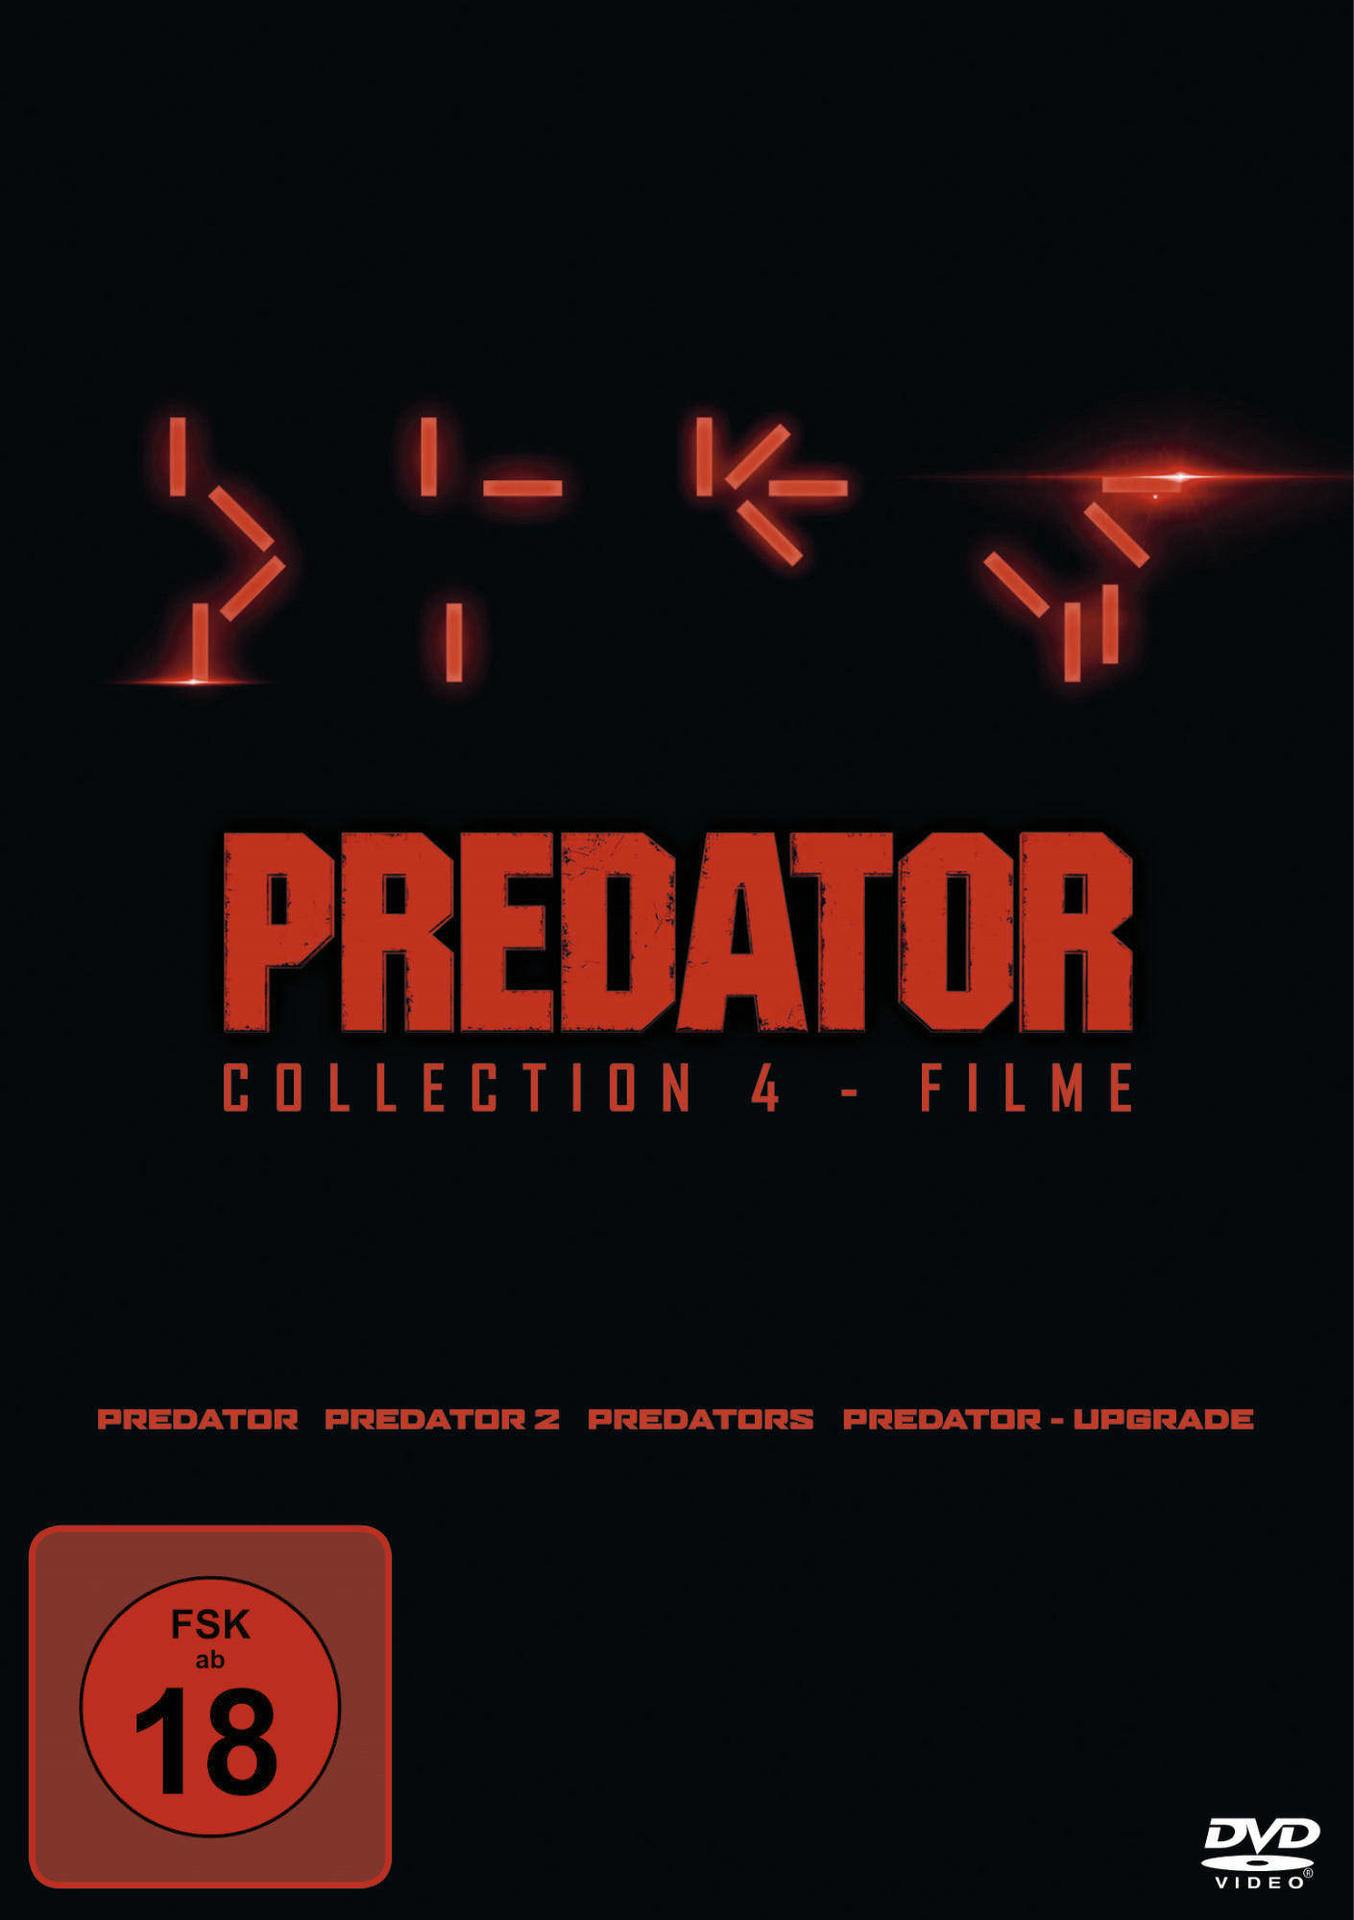 Collection 2, 1-4: Predator Predator, - Predator DVD Predators, Upgrade Predator